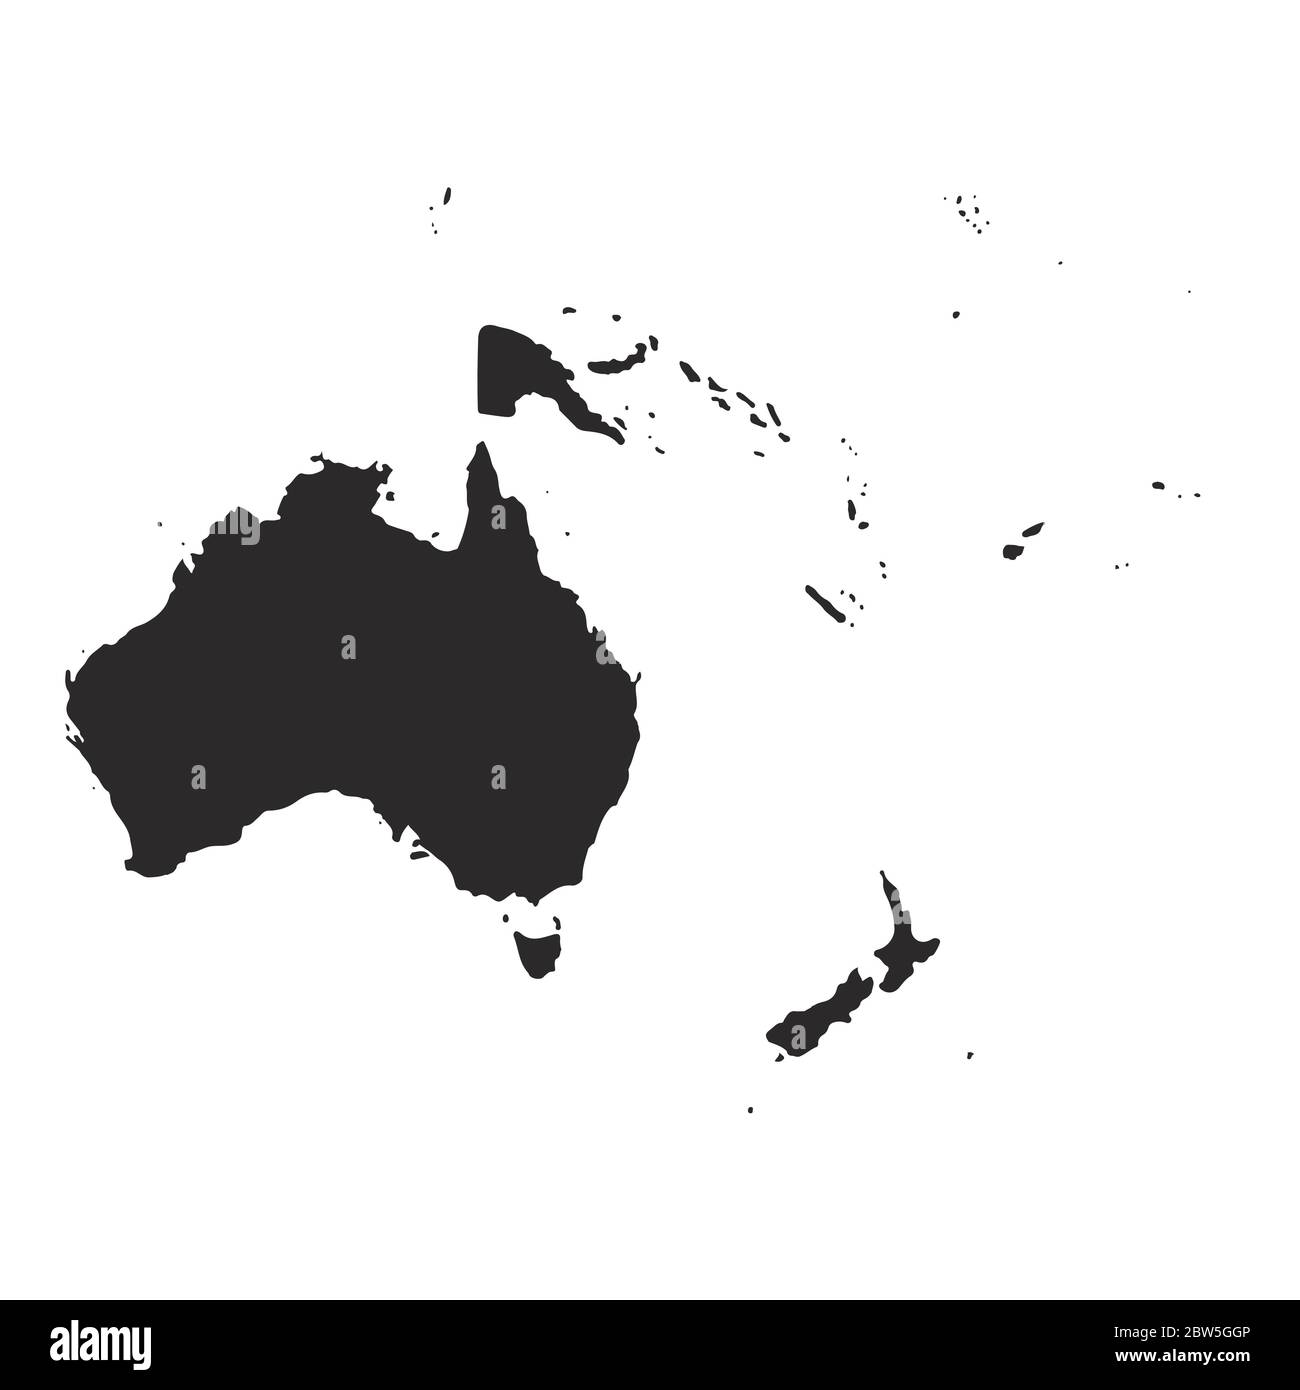 Mappa vettoriale Australia Oceania. Illustrazione vettoriale isolata. Nero su sfondo bianco. Illustrazione EPS 10. Illustrazione Vettoriale